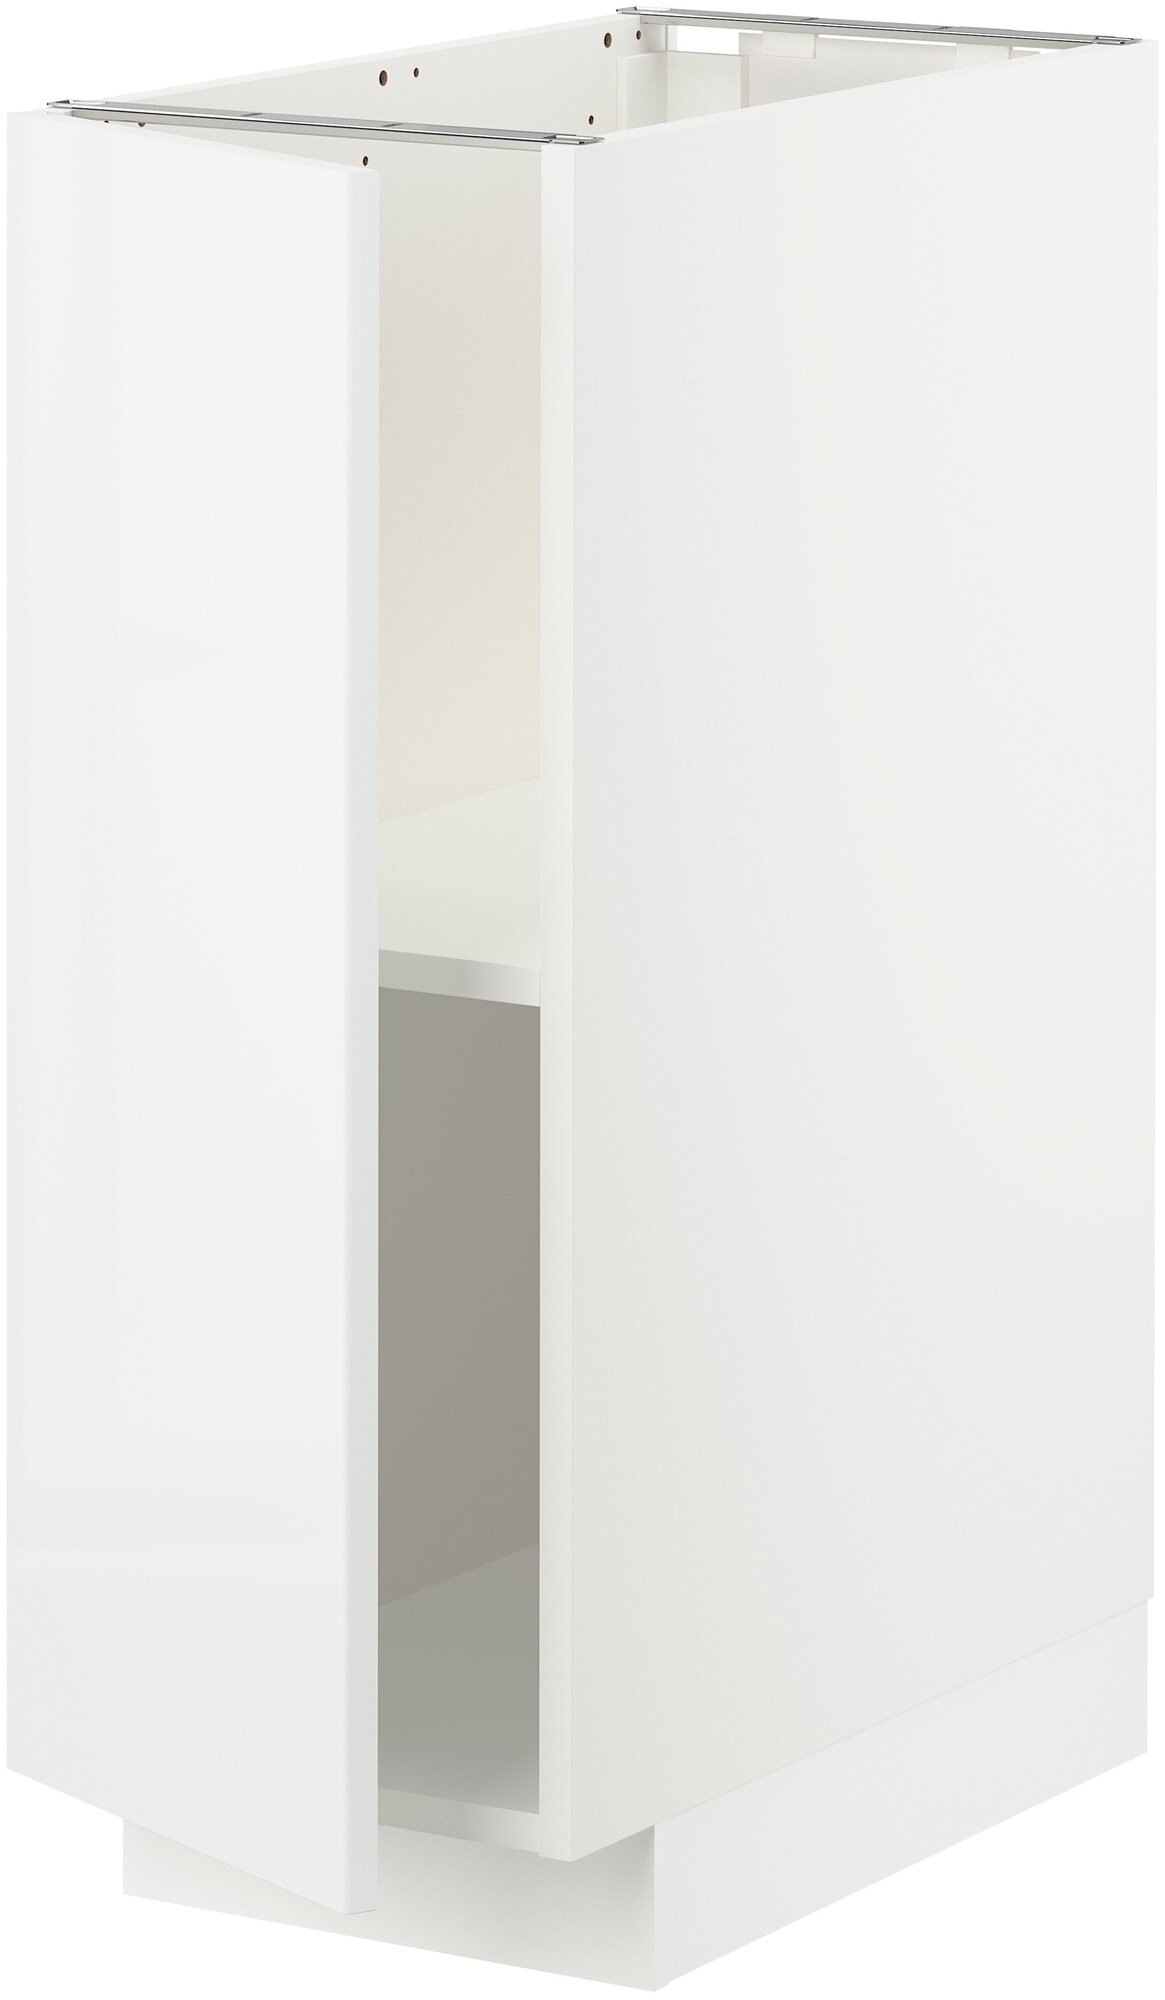 METOD метод напольный шкаф с полками 30x60 см белый/Рингульт белый - фотография № 1